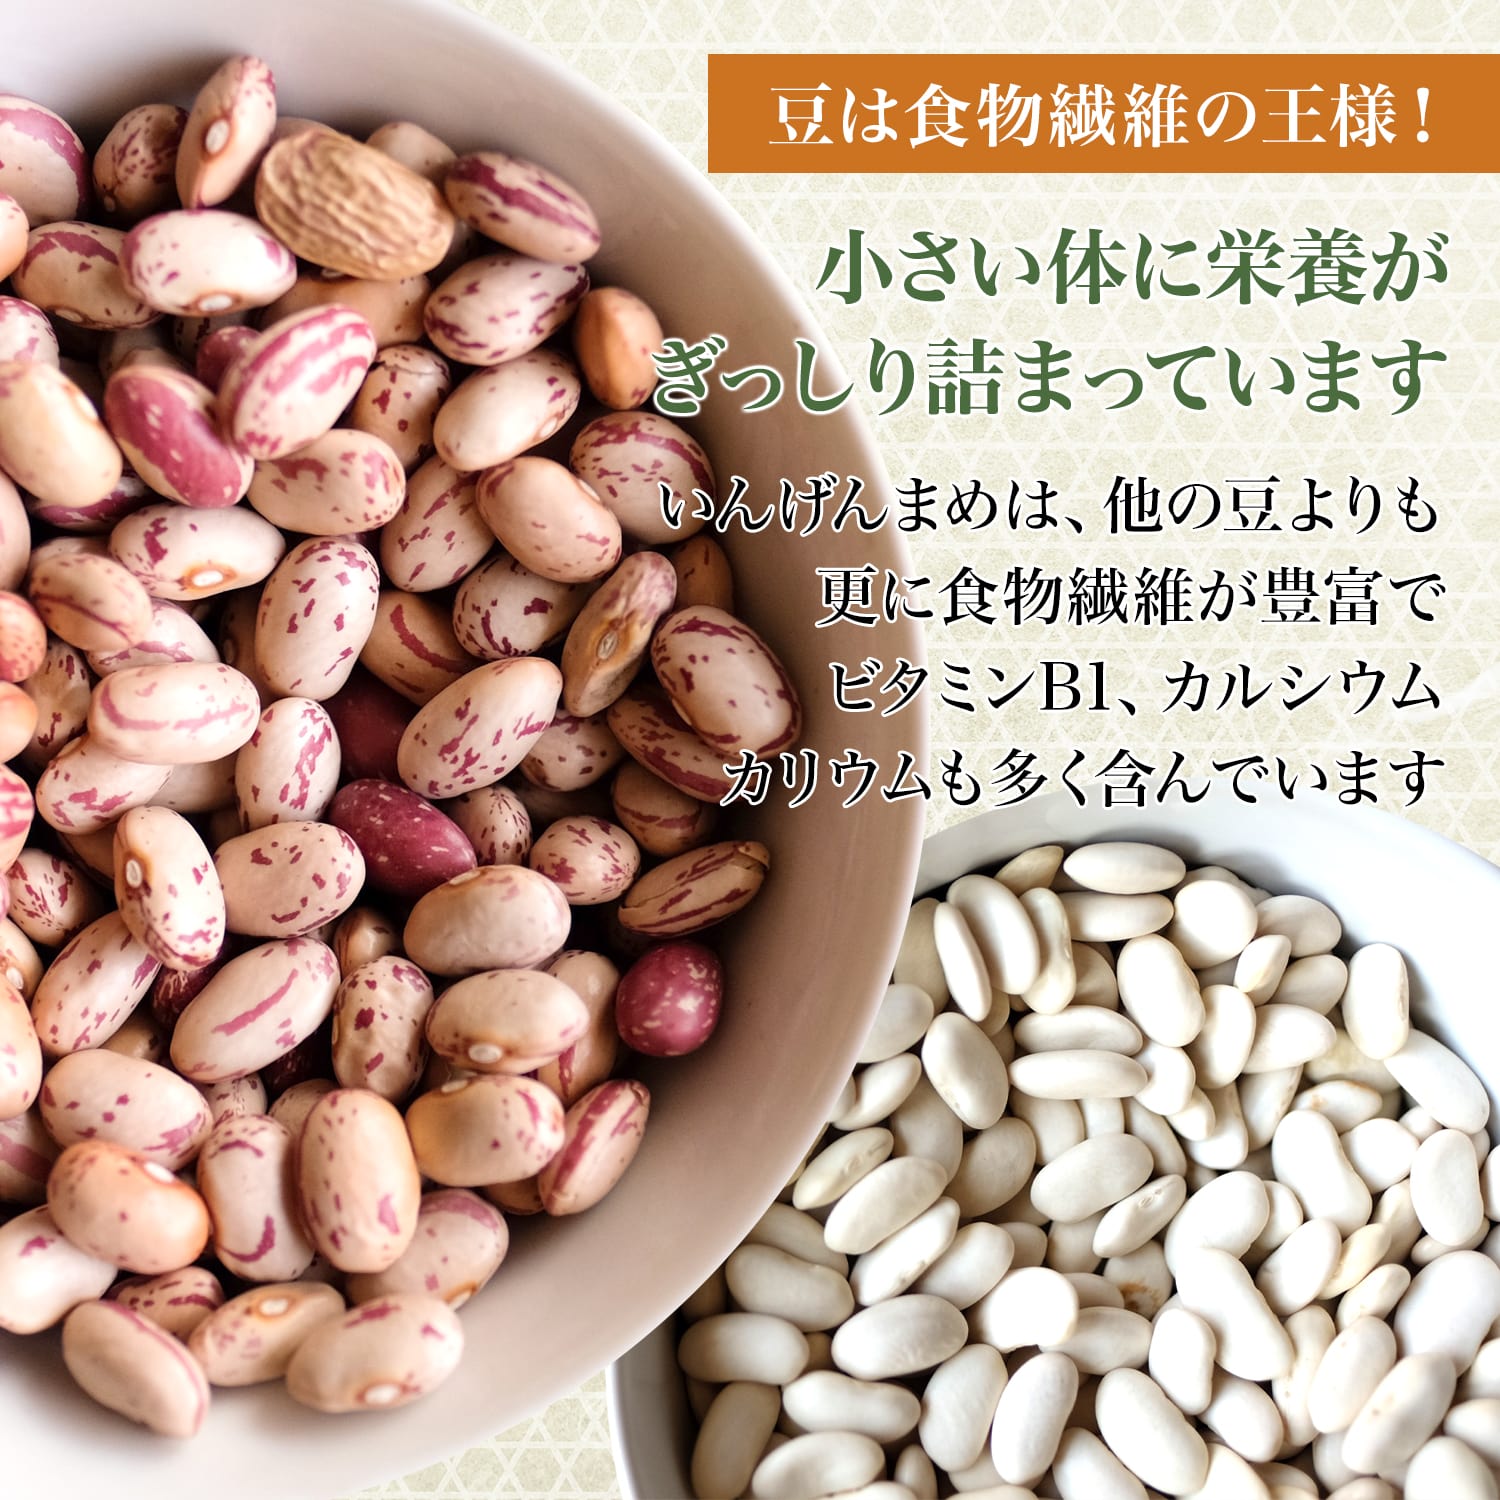 セール いんげん豆 1.2kg daterskate.com.ar